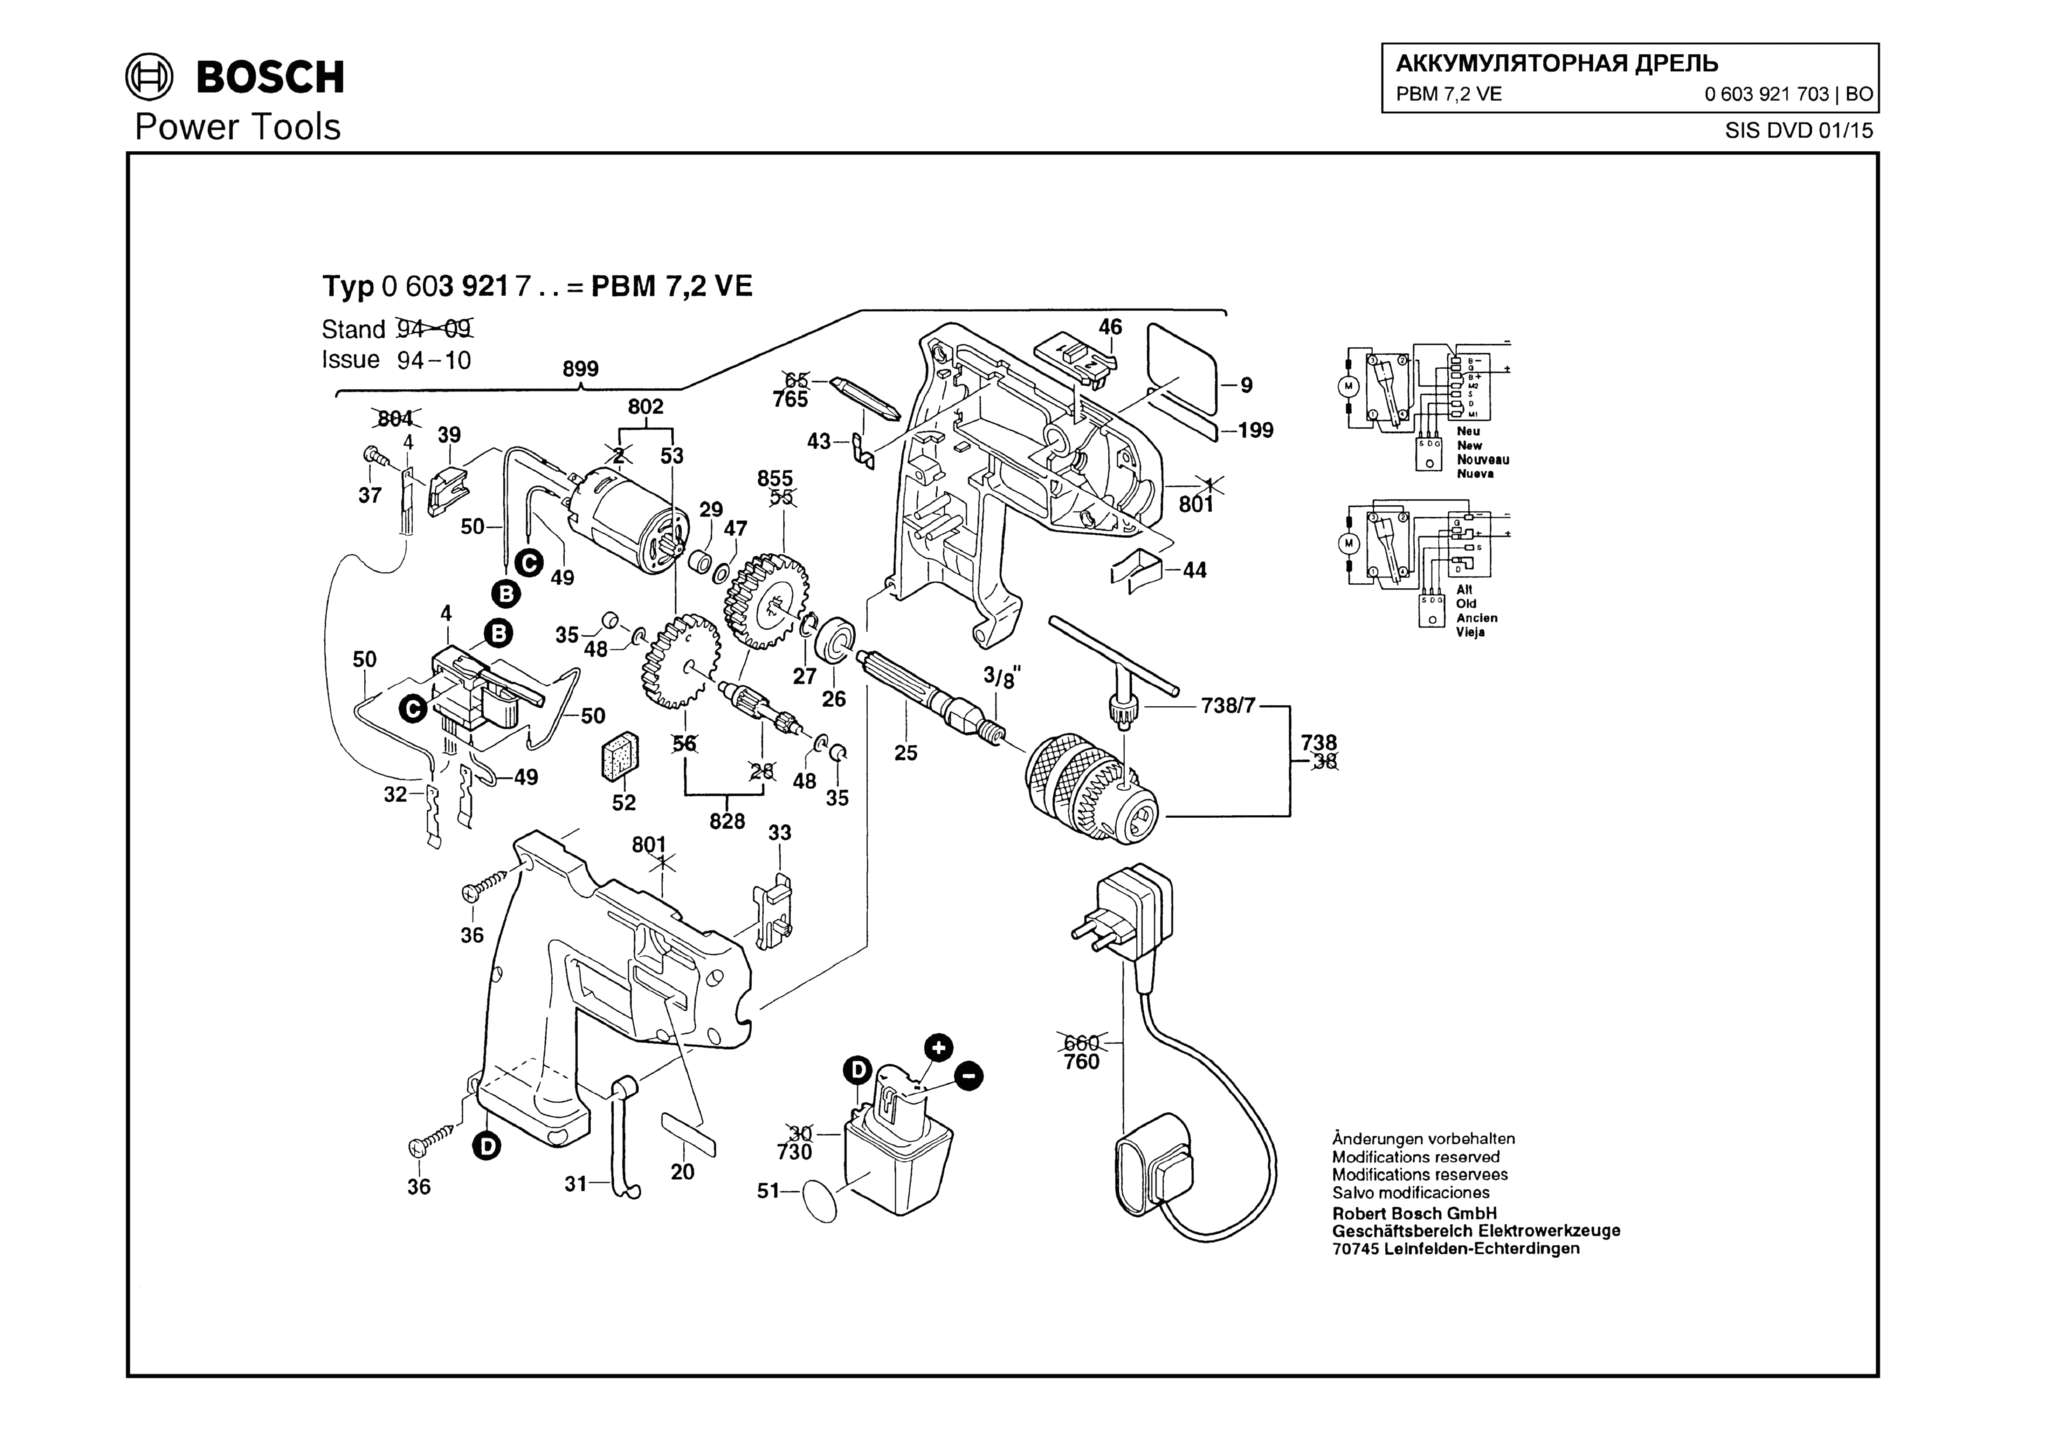 Запчасти, схема и деталировка Bosch PBM 7,2 VE (ТИП 0603921703)